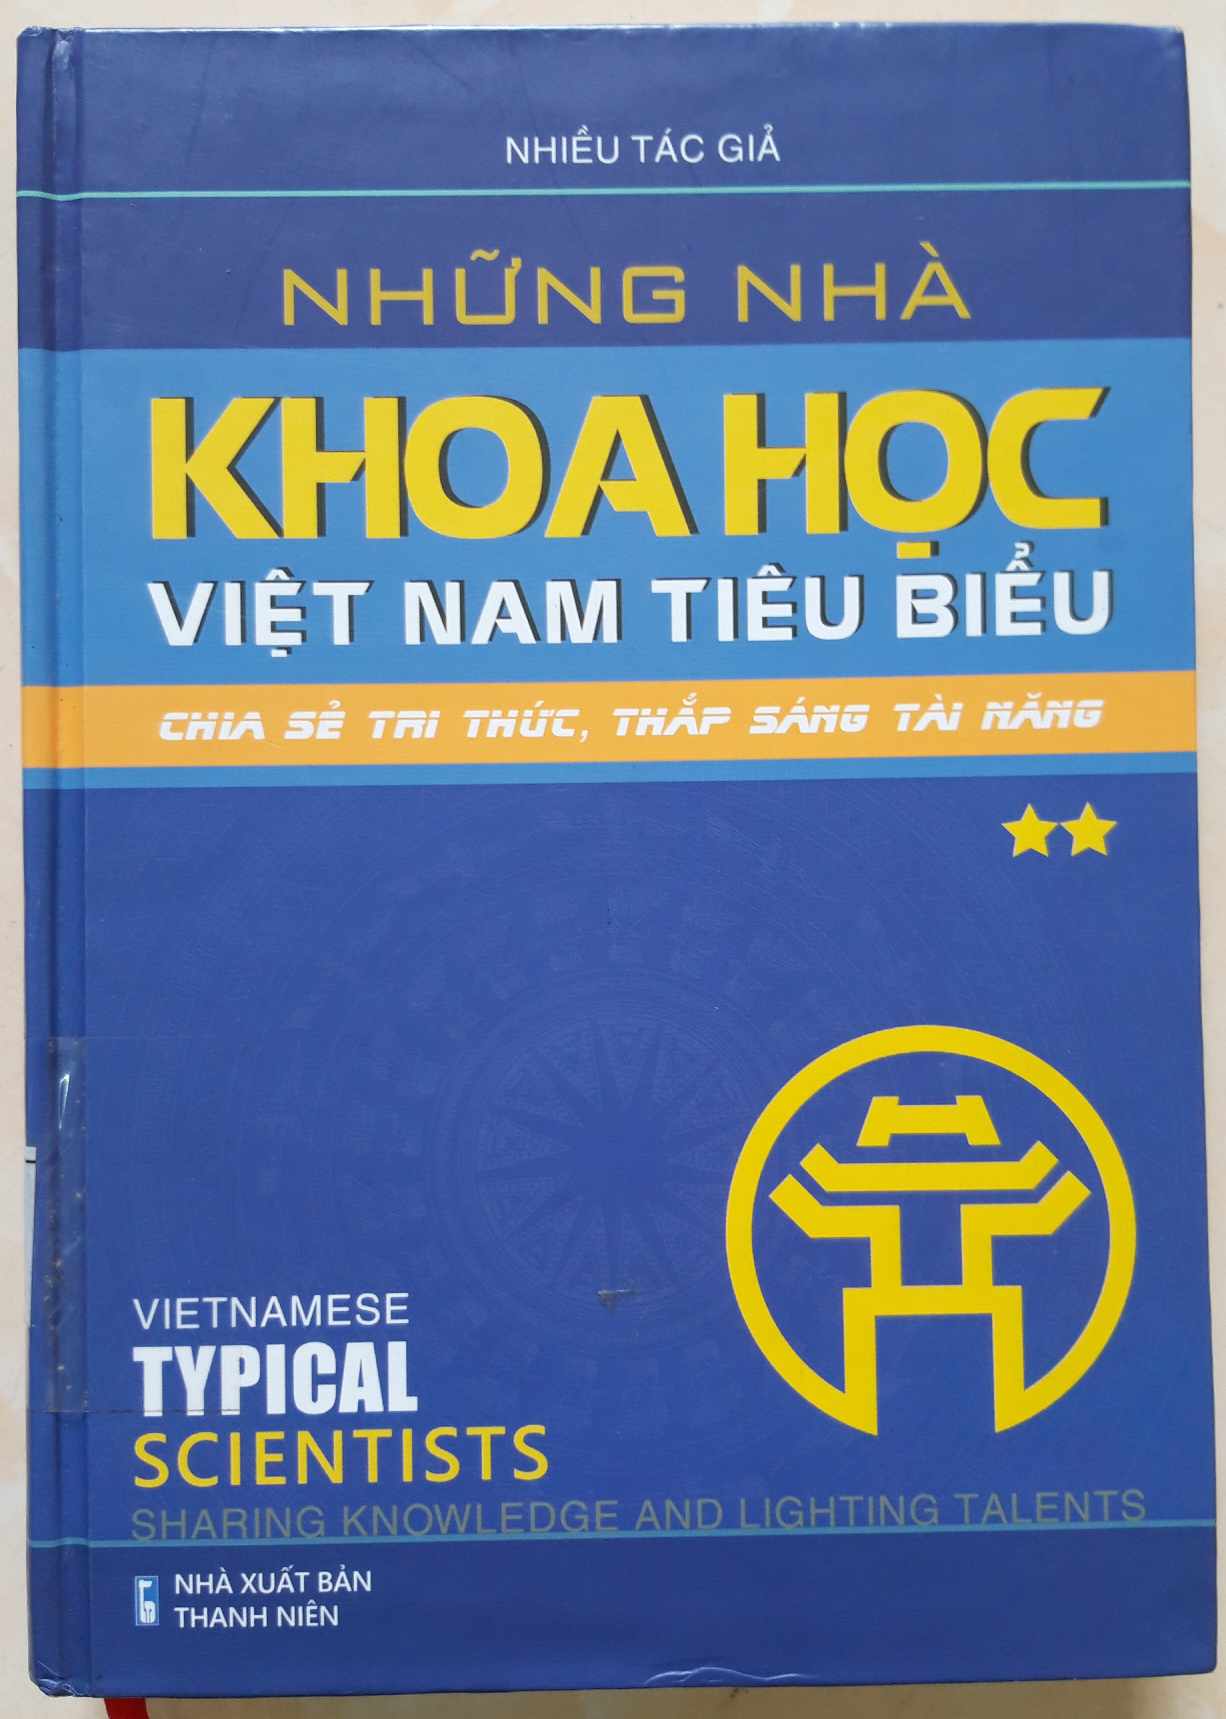 Những Nhà khoa học Việt Nam tiêu biểu - Chia sẻ tri thức, thắp sáng tài năng